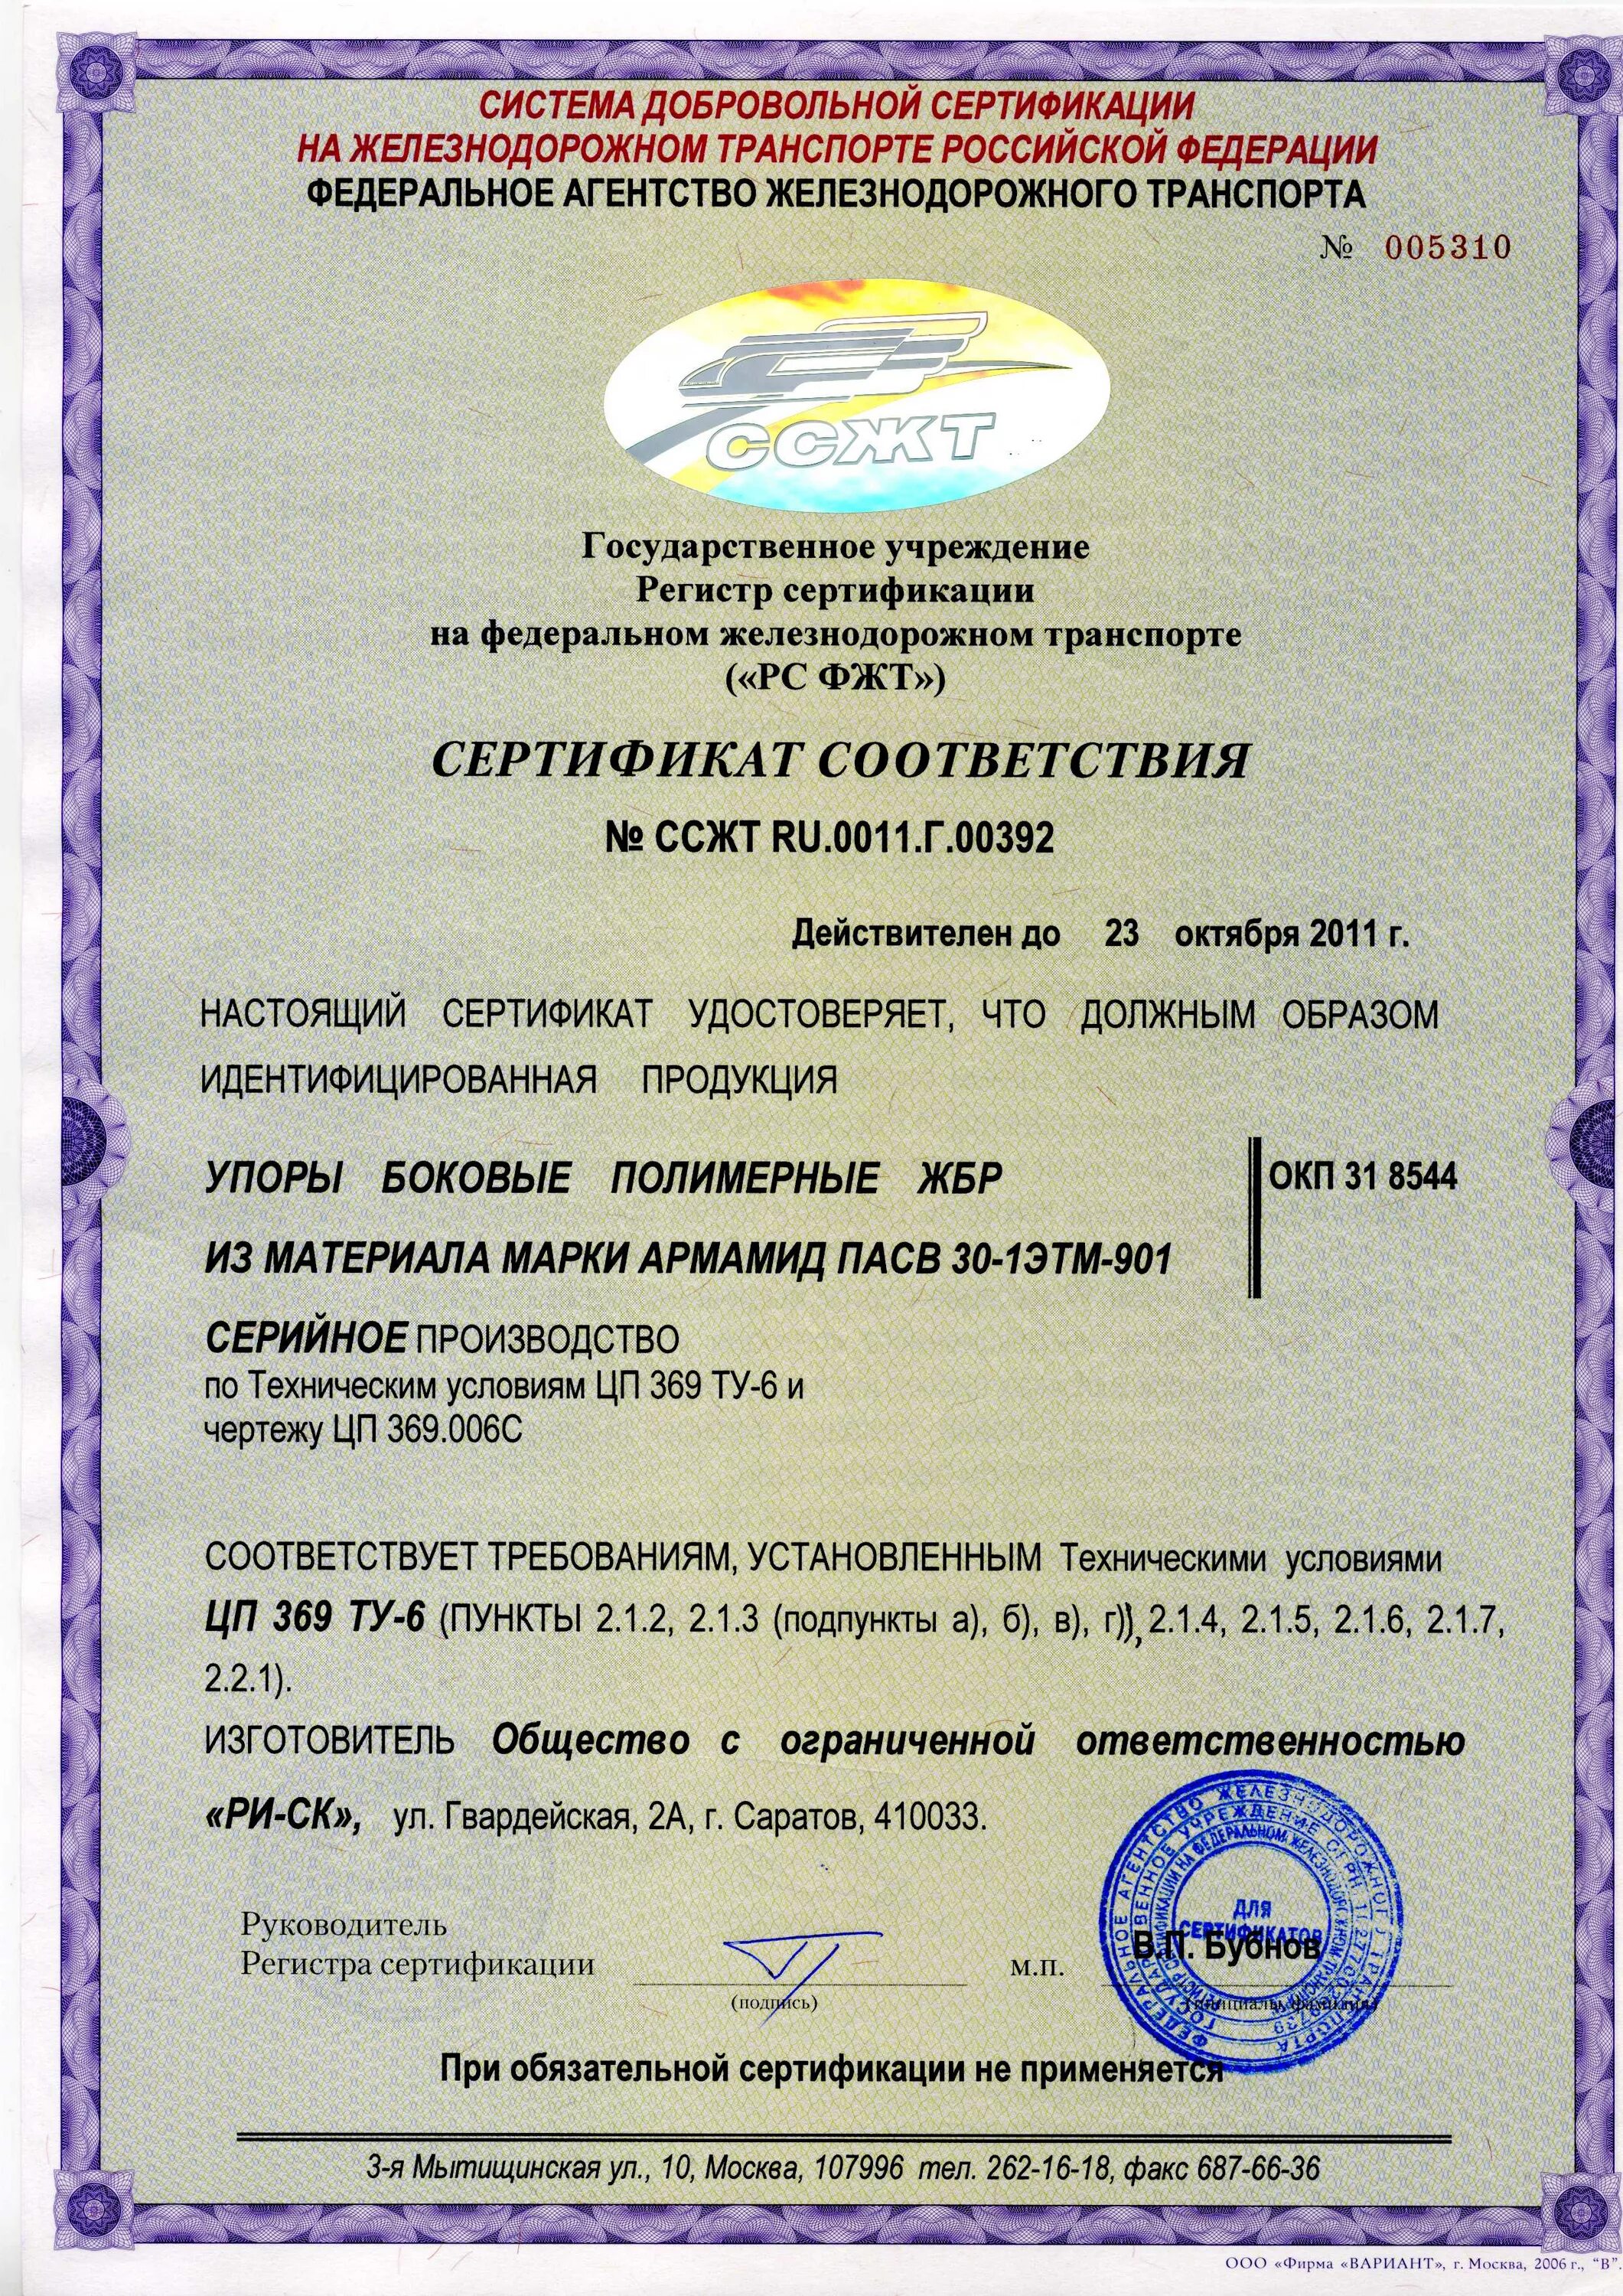 Сертификация производителю. Сертификация на ЖД транспорте. Сертификаты соответствия на железнодорожного транспорта. Сертификат железнодорожного транспорта. Система сертификации на Железнодорожном транспорте.